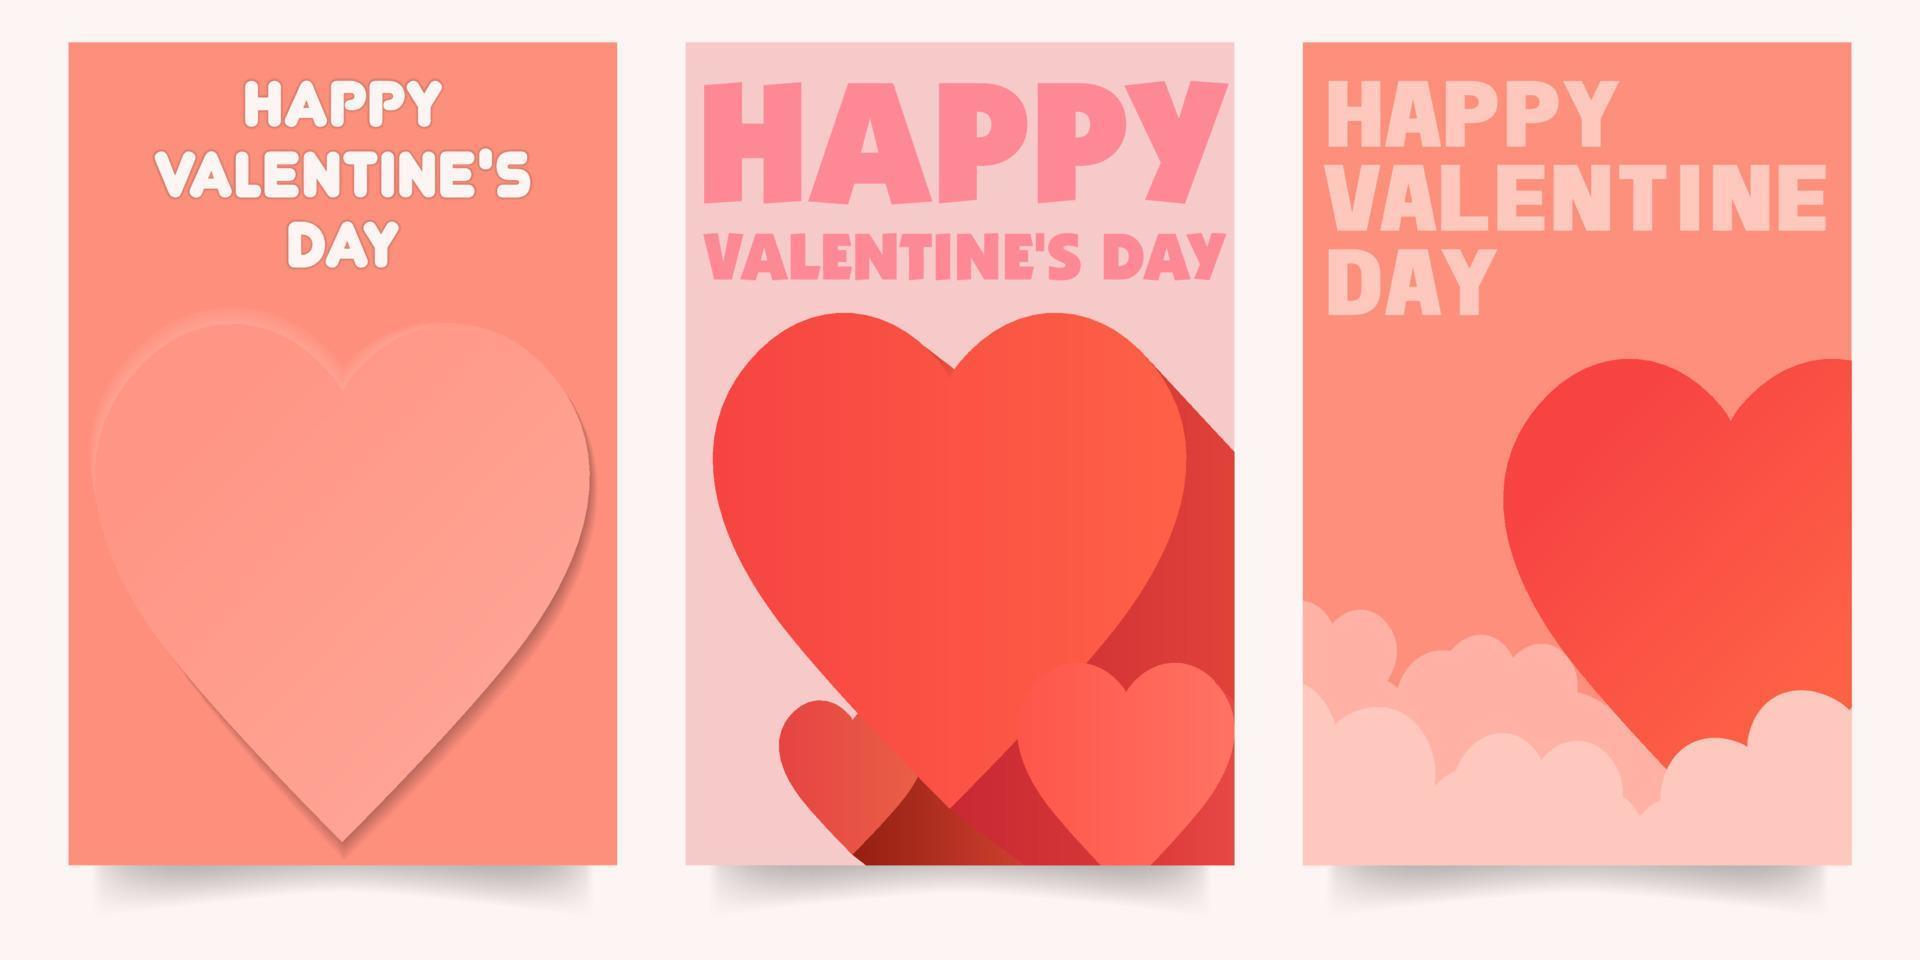 happy valentine's day design vertical moderne simple affiche minimaliste illustrations vectorielles eps10 vecteur